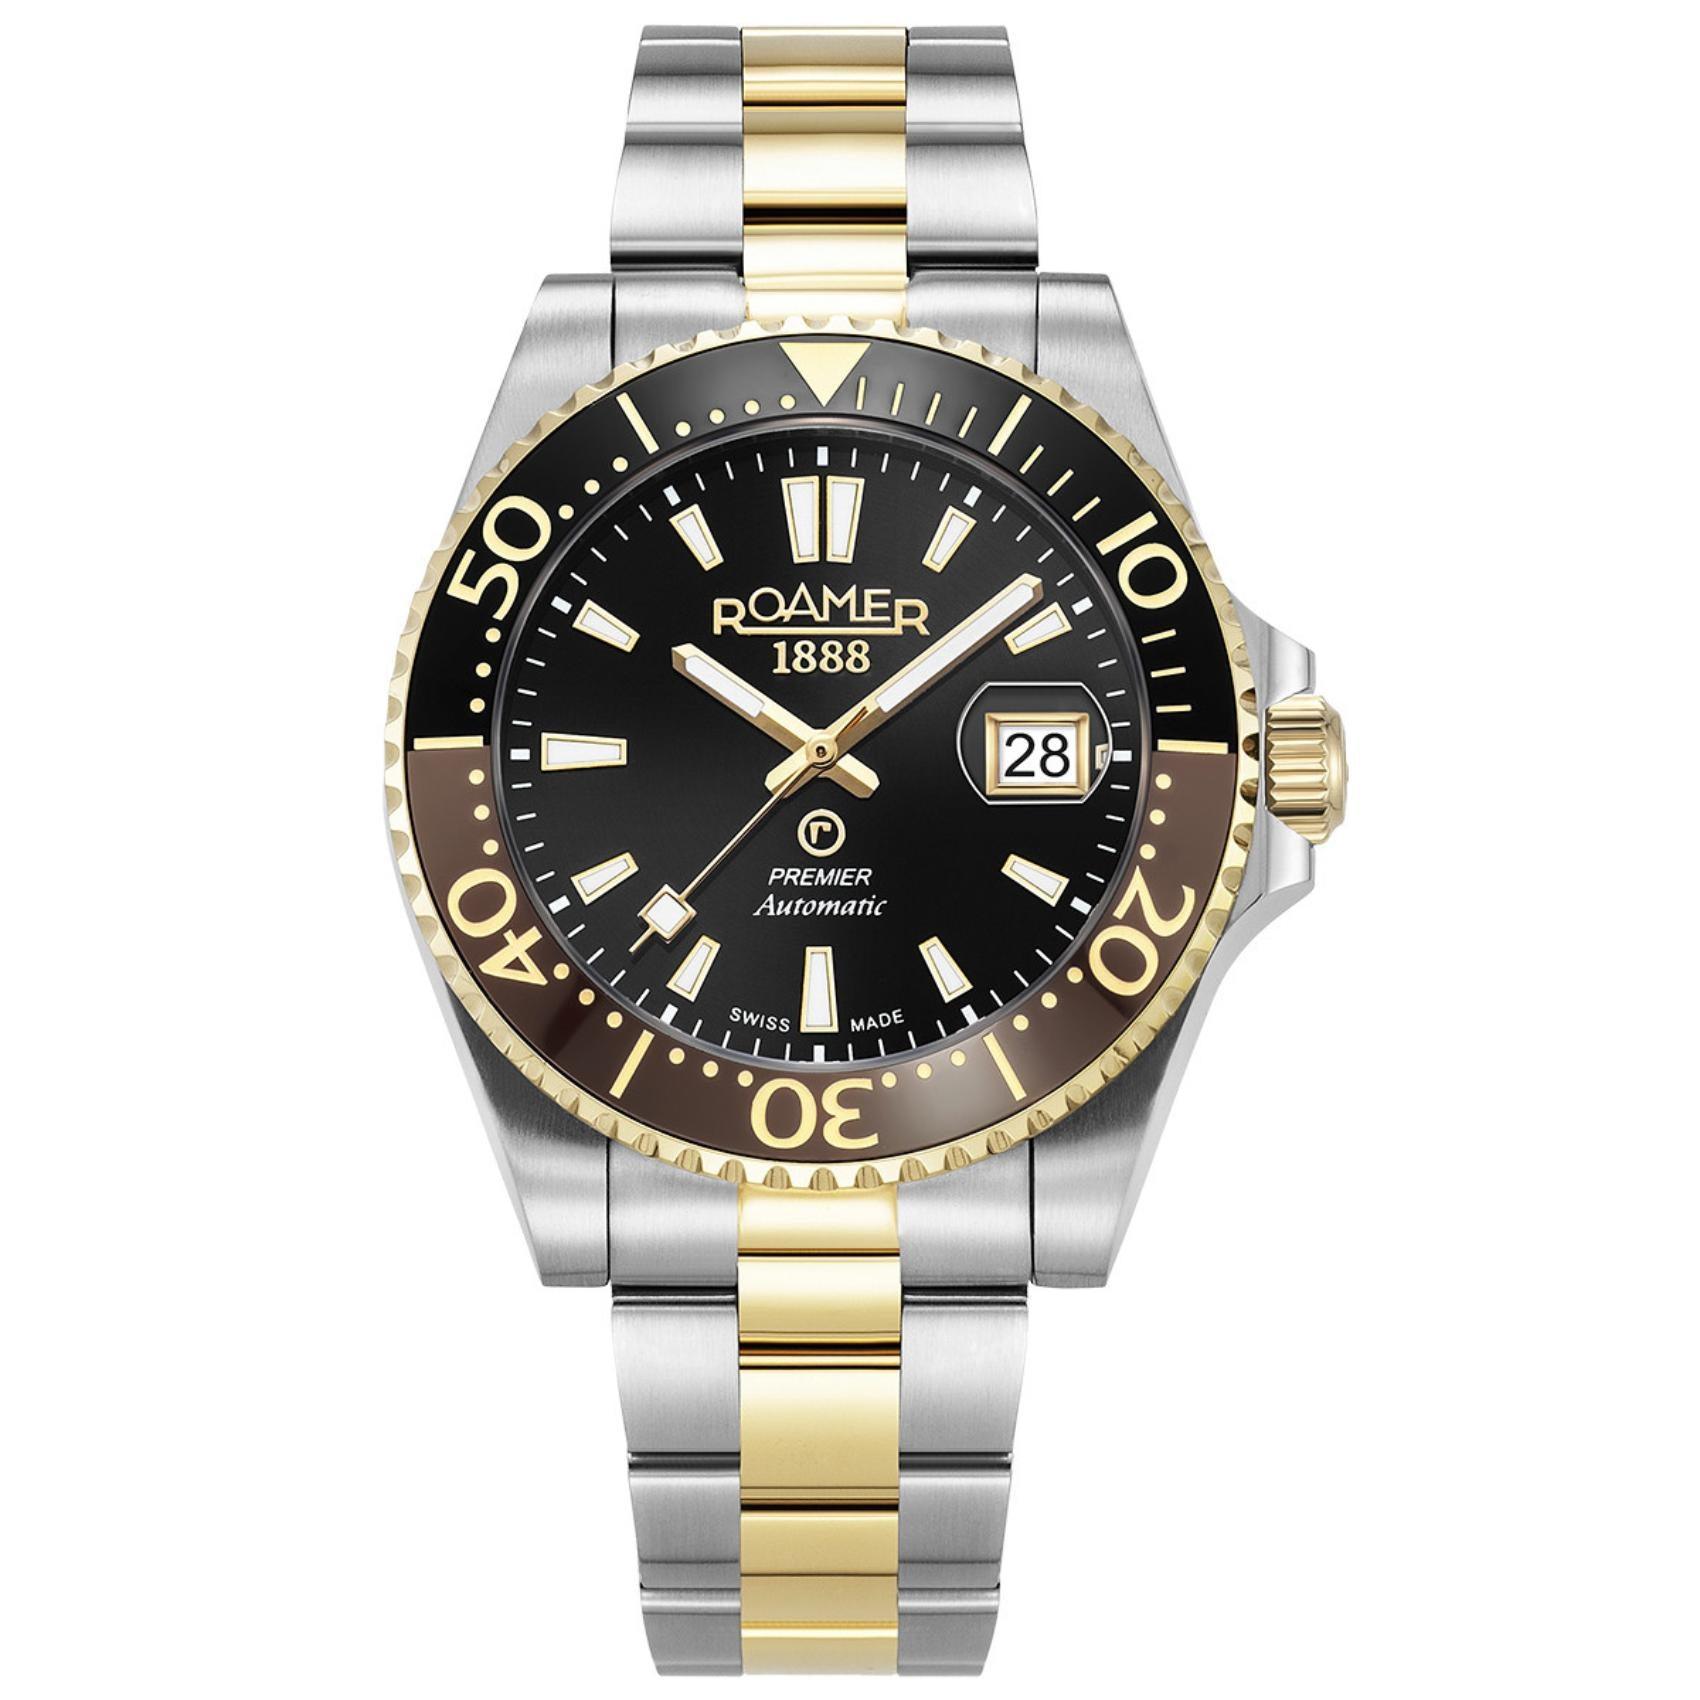 Αυτόματο ρολόι καταδυτικό Roamer Premier 986983-47-85-20 με δίχρωμο ασημί-χρυσό μπρασελέ, μαύρο καντράν με ένδειξη ημερομηνίας και κάσα διαμέτρου 42mm.